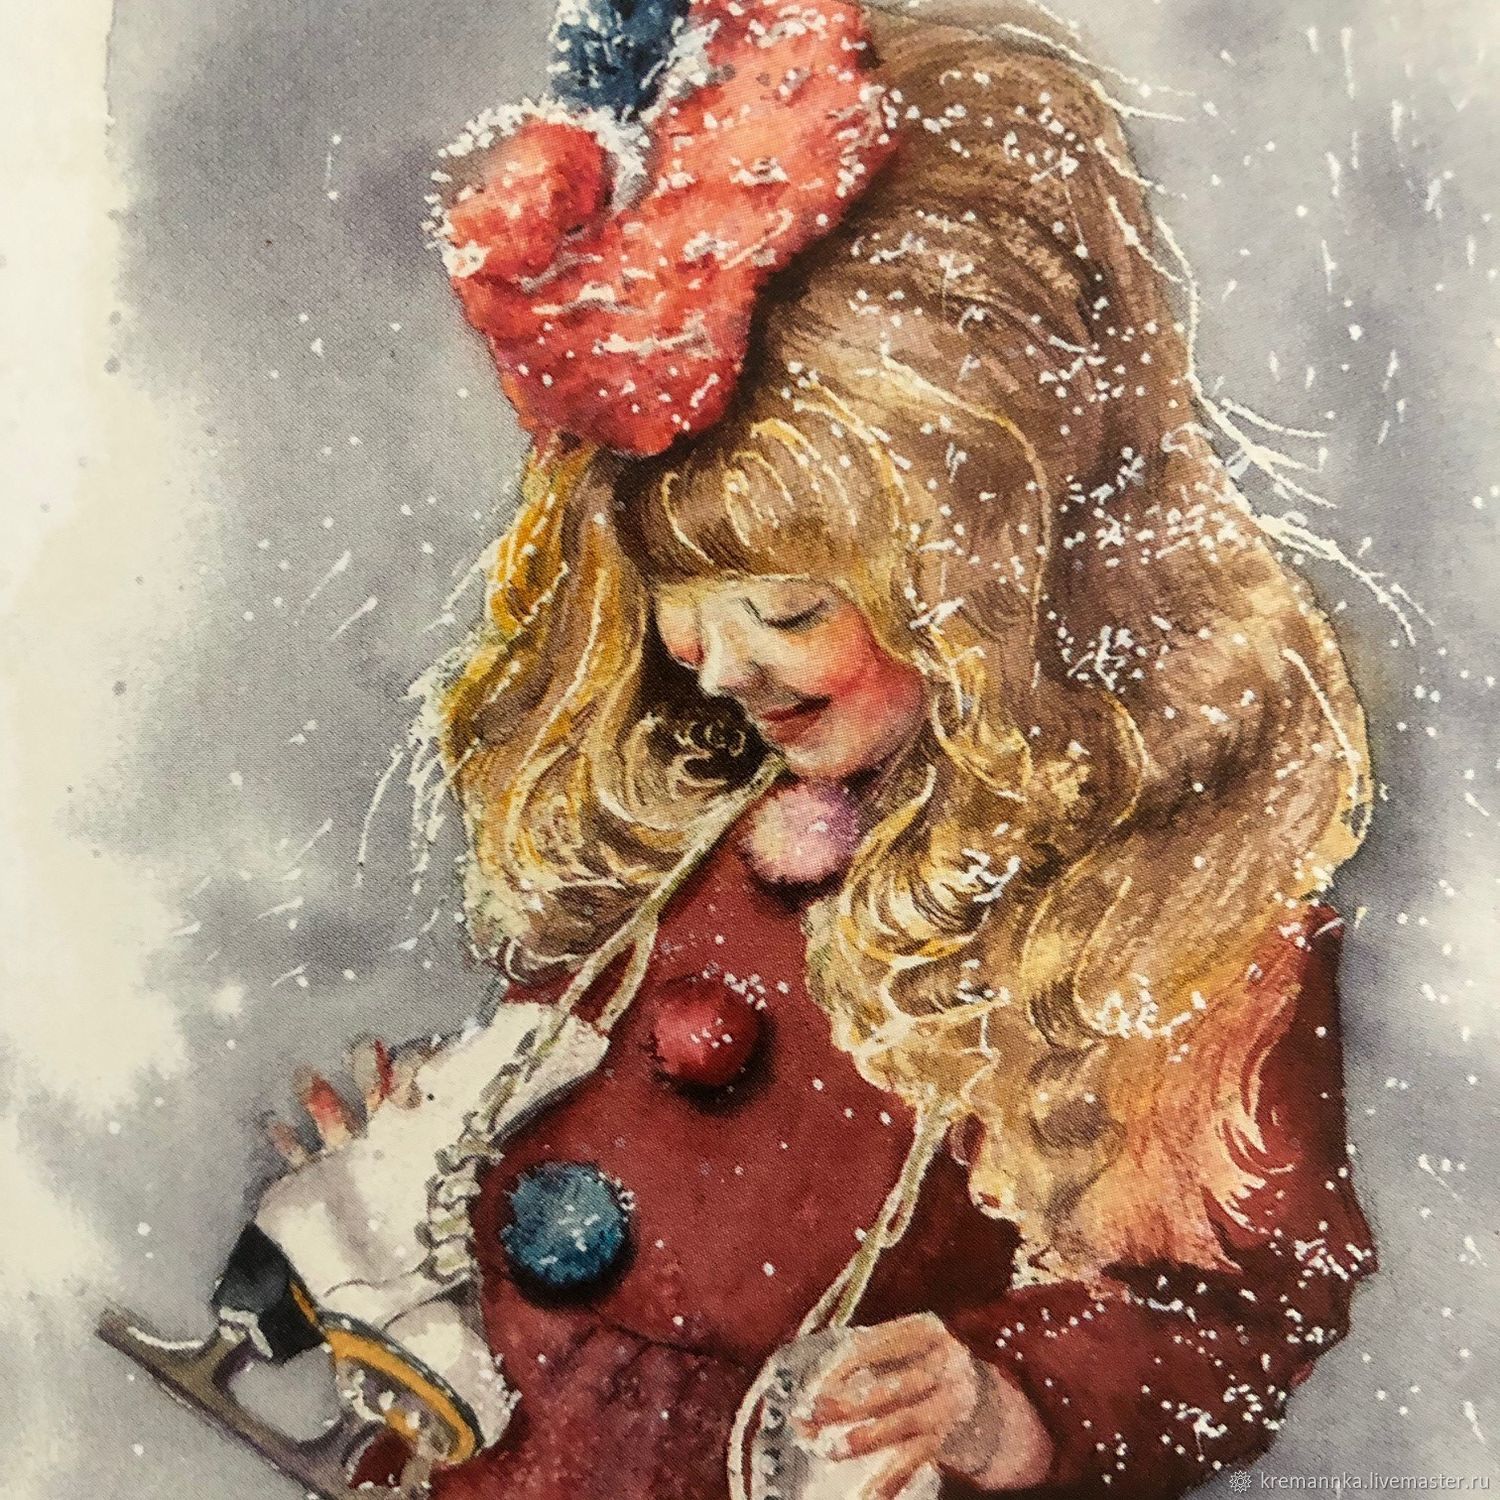  Девочка с коньками, Мальчик с мишкой, Открытки, Новосибирск,  Фото №1